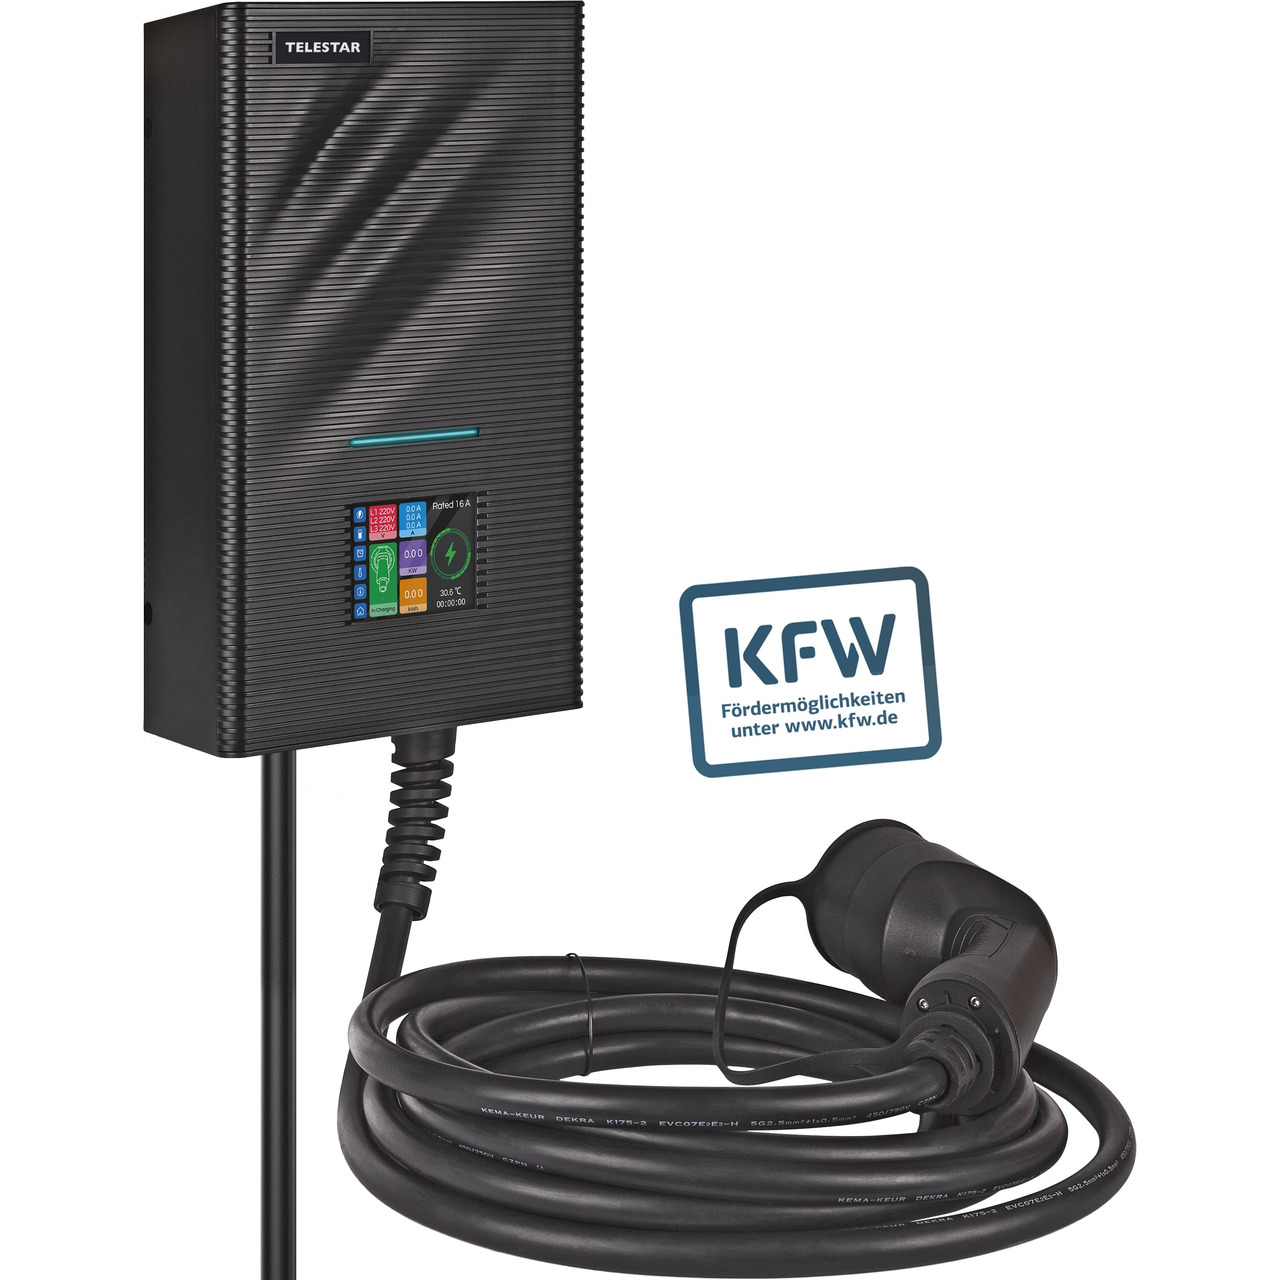 Telestar frderfhige Wallbox EC 311 S6- 11 kW-  6 m Ladekabel- App